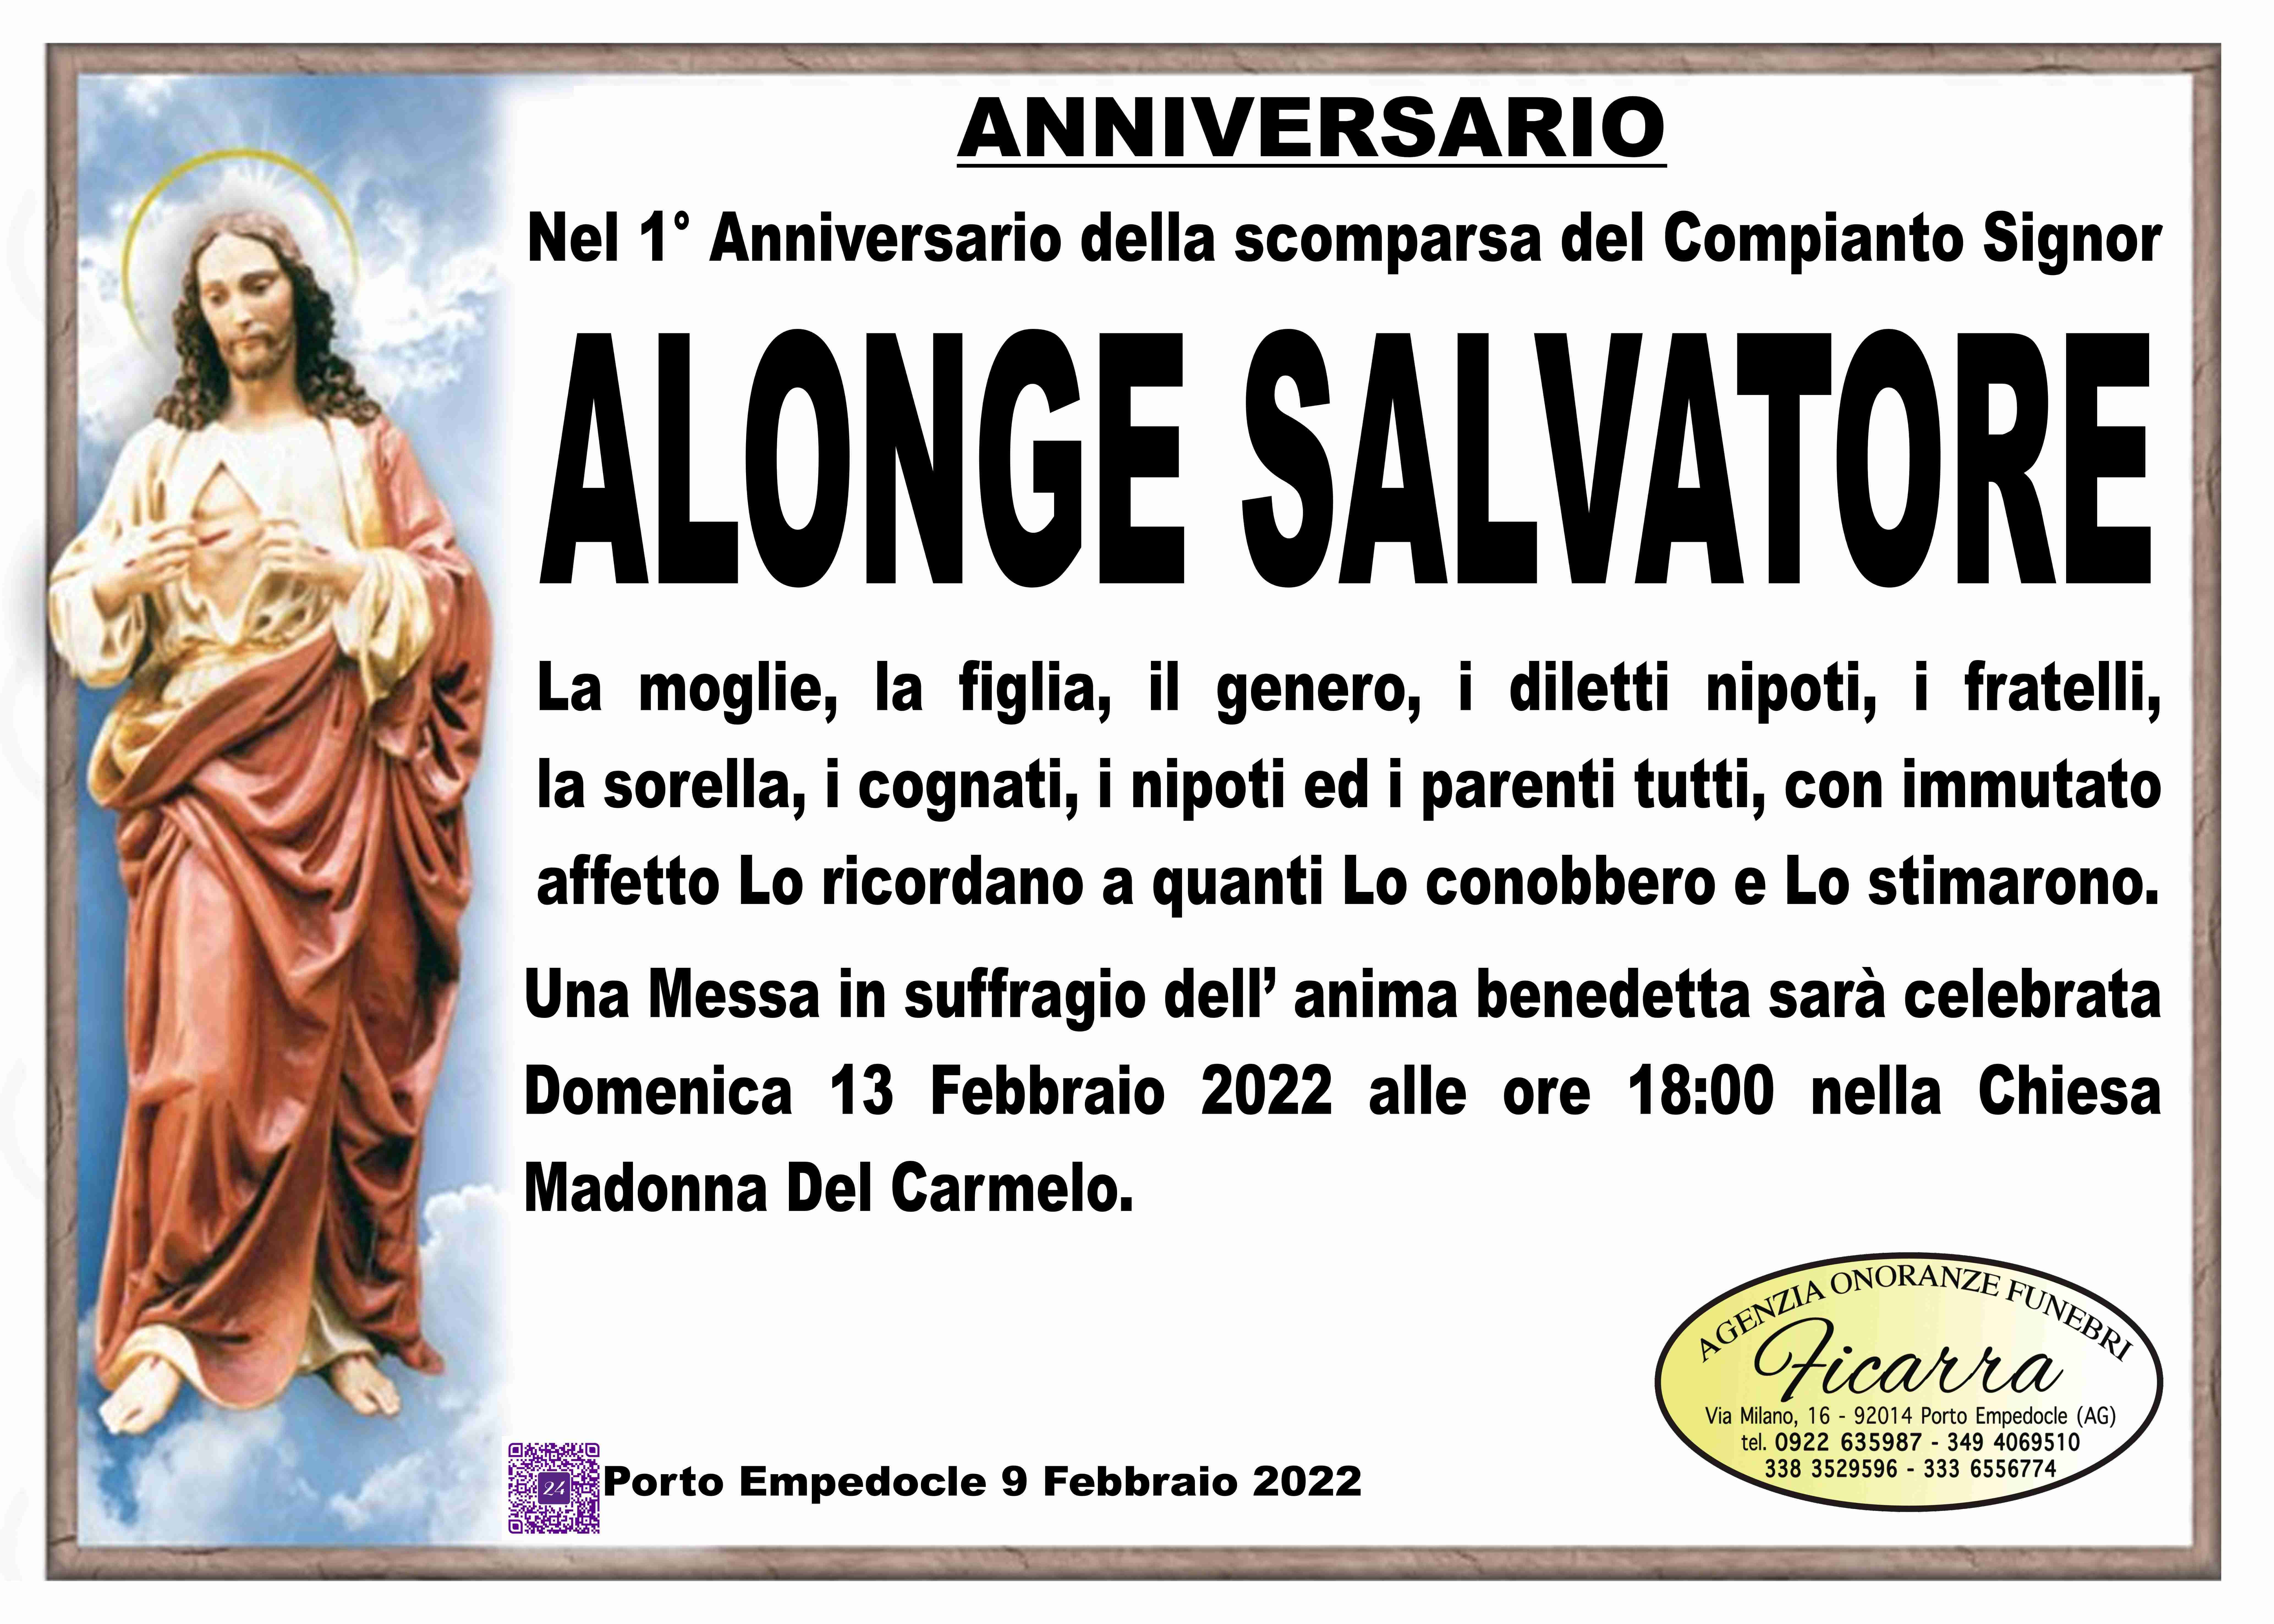 Salvatore Alonge